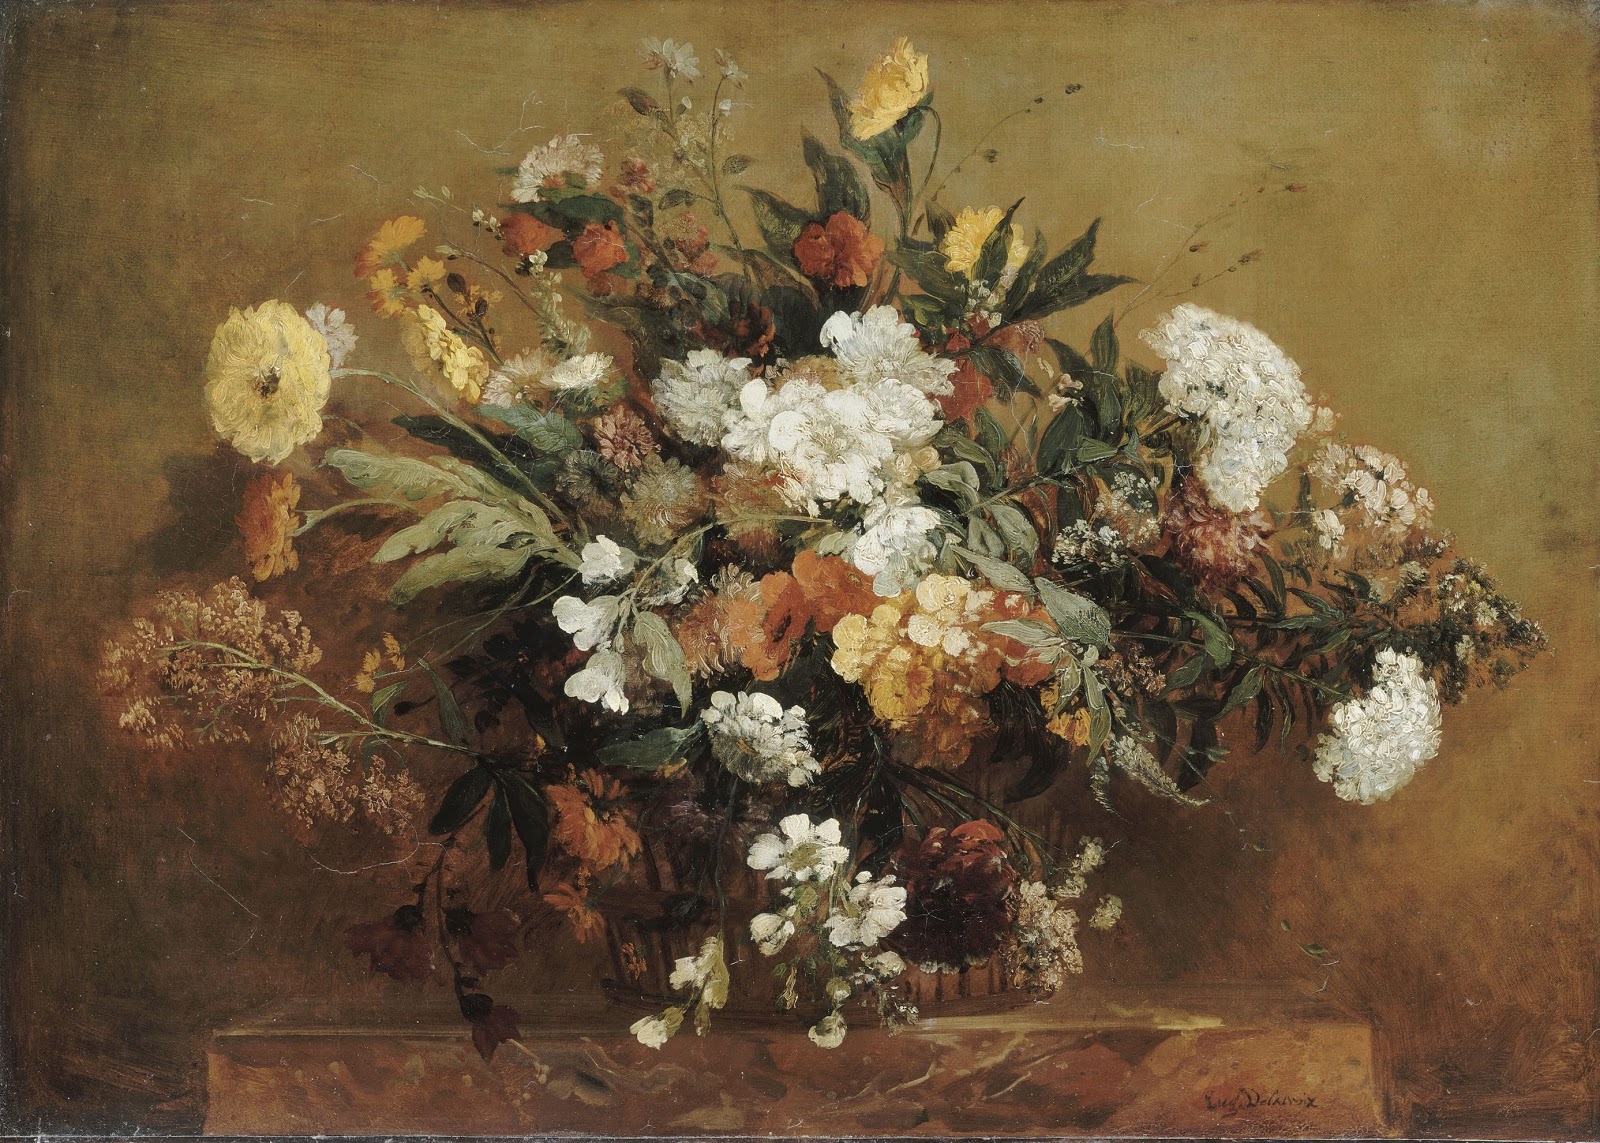 Eugene+Delacroix-1798-1863 (281).jpg